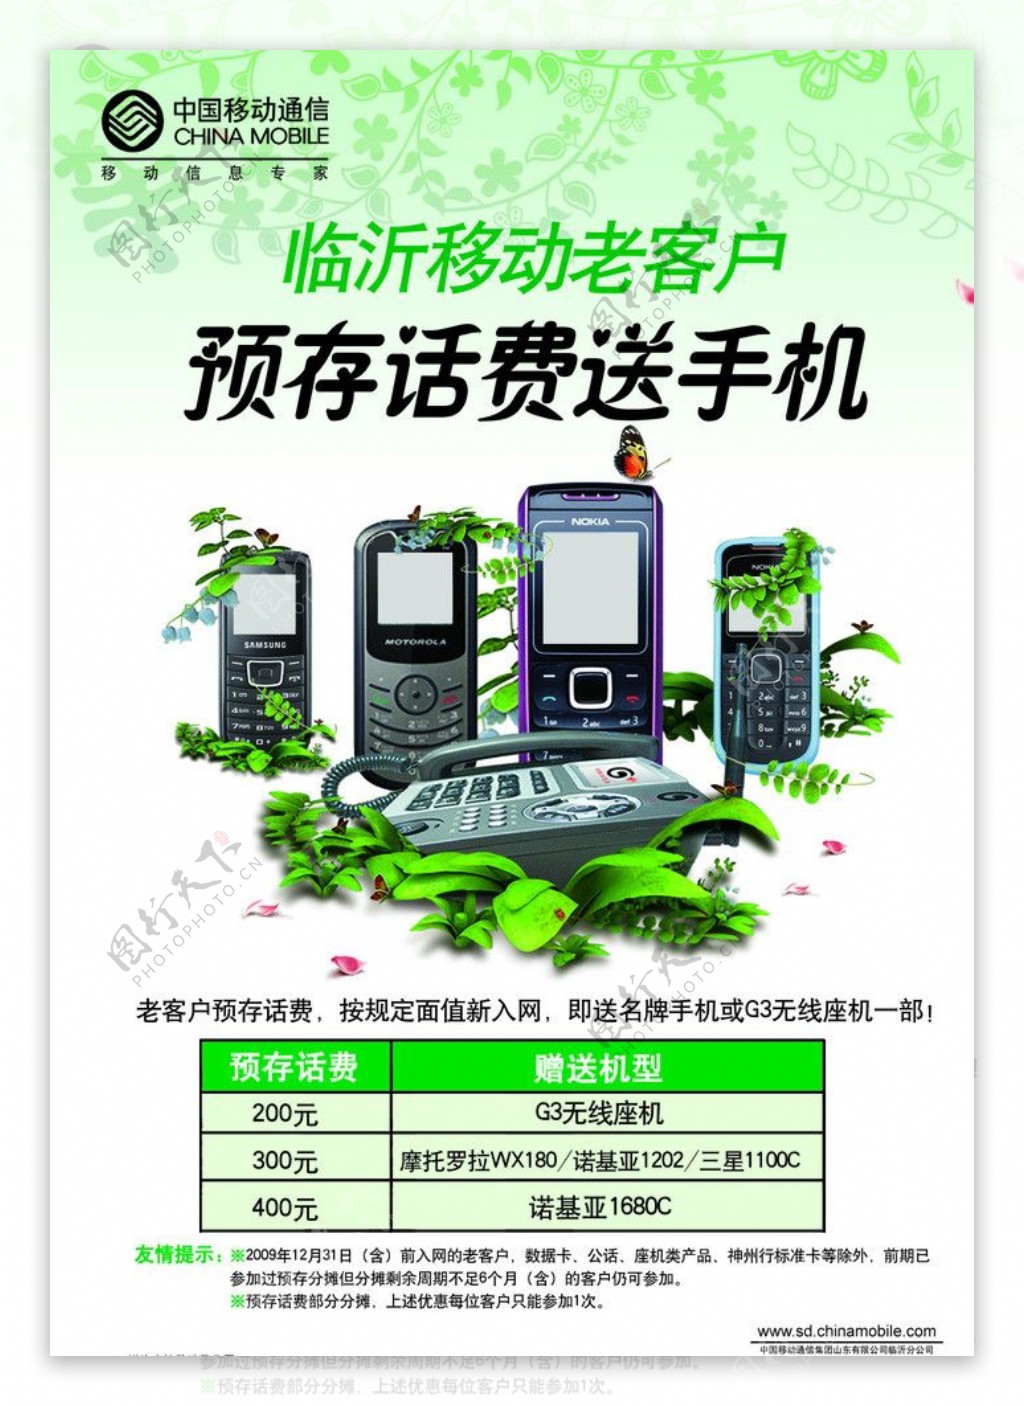 中国移动预存话费送手机海报图片